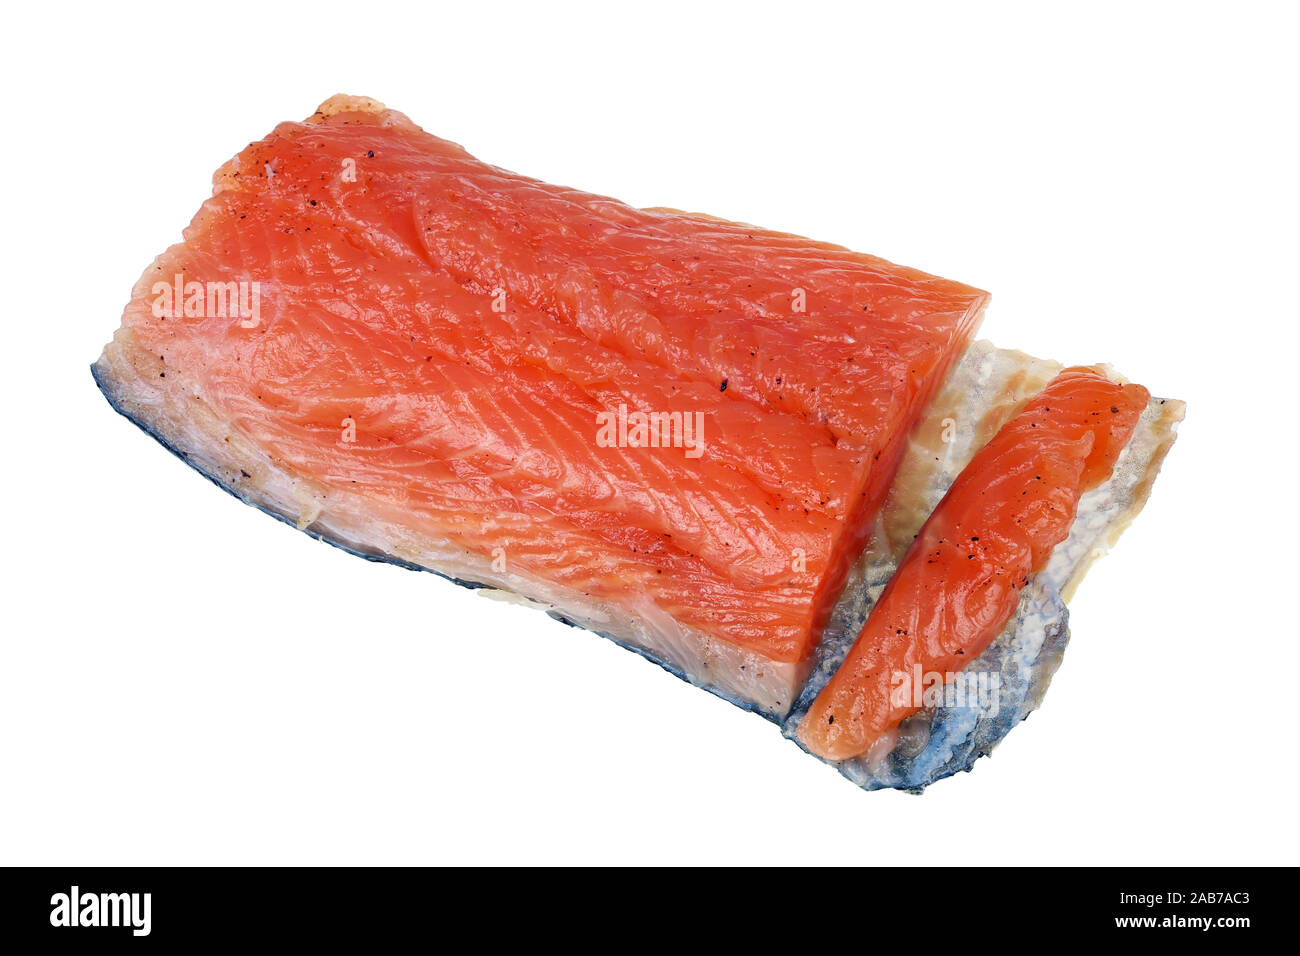 Un grande pezzo di deliziosi piatti salati filetto di salmone norvegese con la pelle. Isolato su bianco studio macro Foto Stock